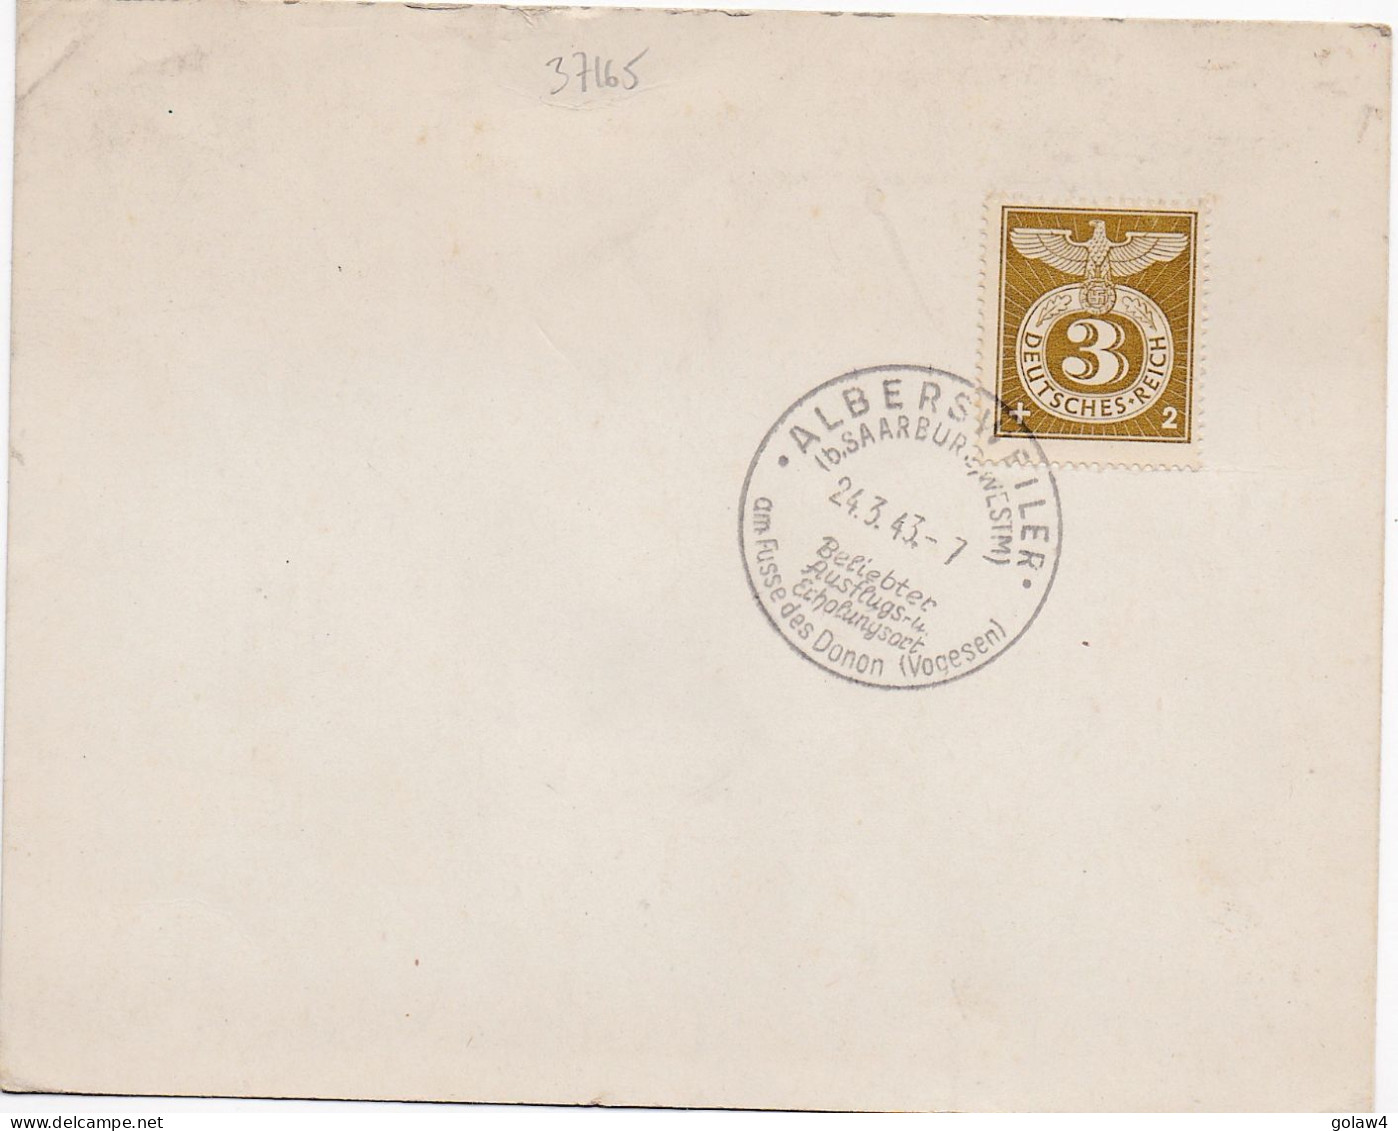 37165# CARTE POSTALE Obl ALBERSVILLER B SAARBURG WESTMARK 1943 AM FUSSE DES DONON VOGESEN ABRESCHVILLER SARREBOURG - Lettres & Documents